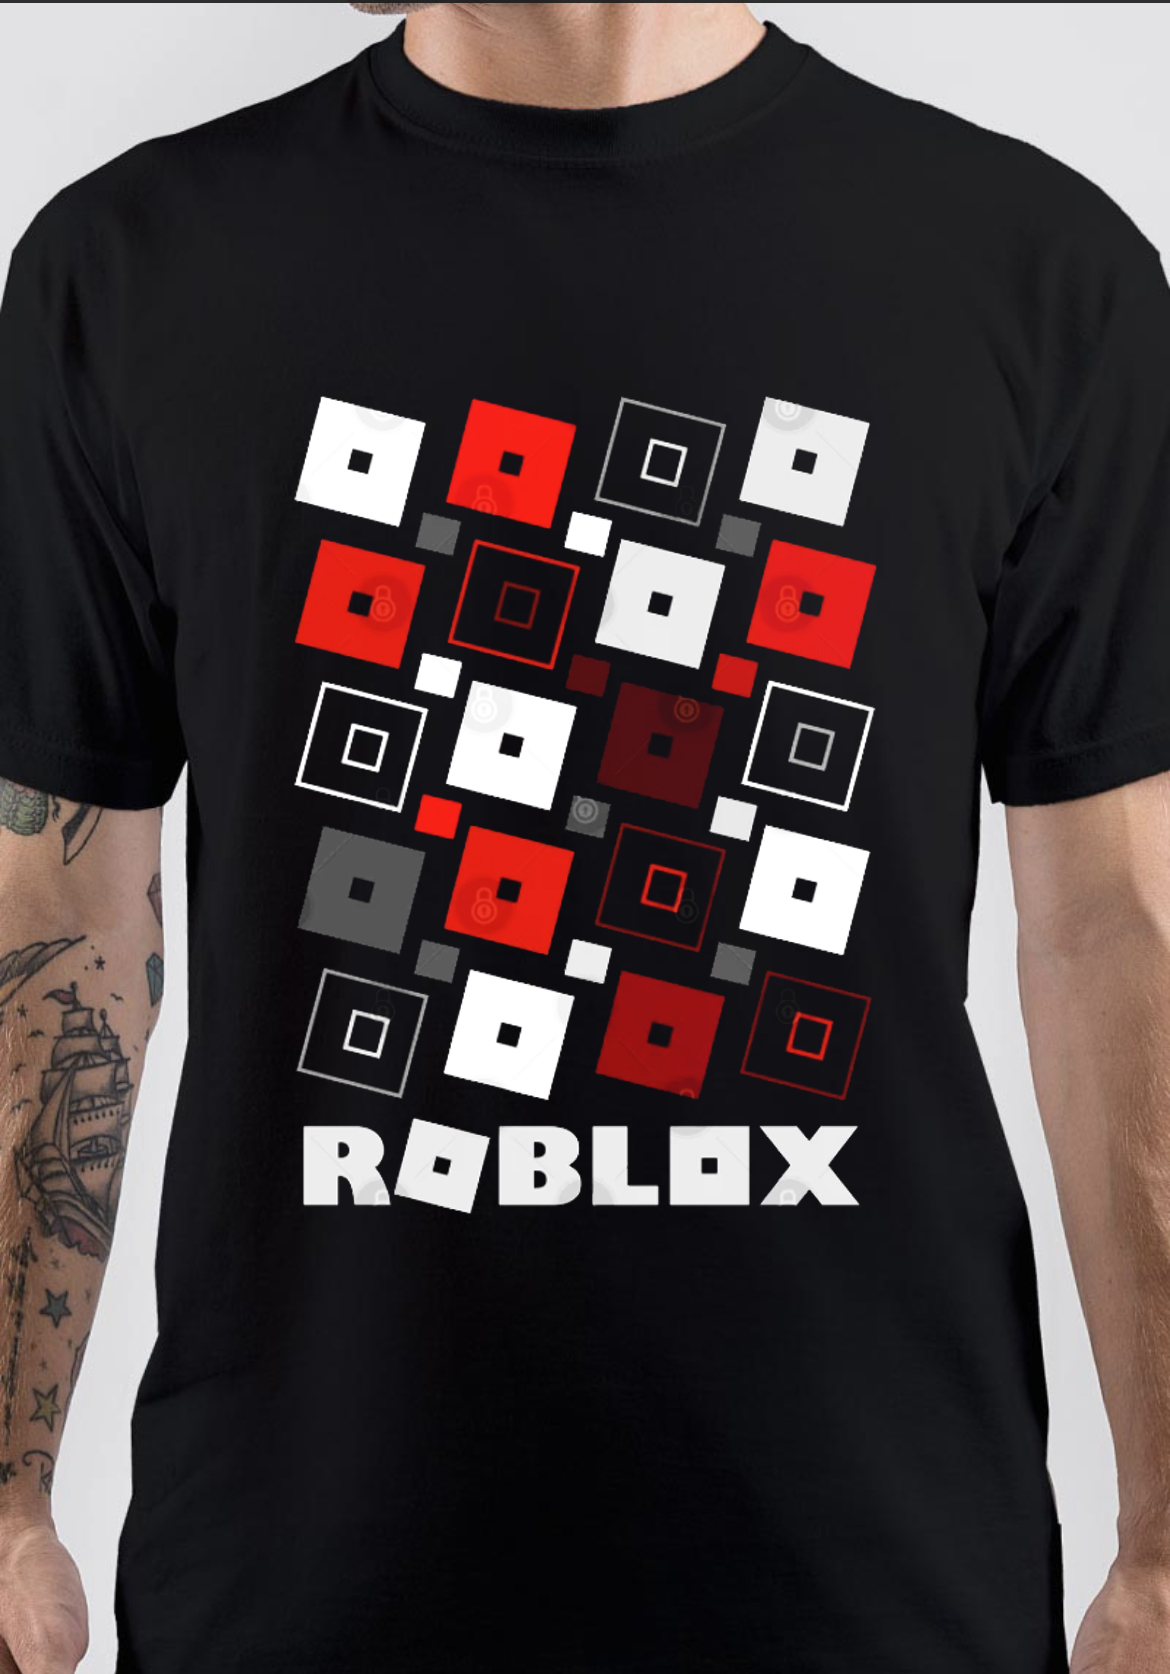 Black roblox T-shirt in 2022, Roblox t-shirt, Cute black shirts, Roblox t  shirts